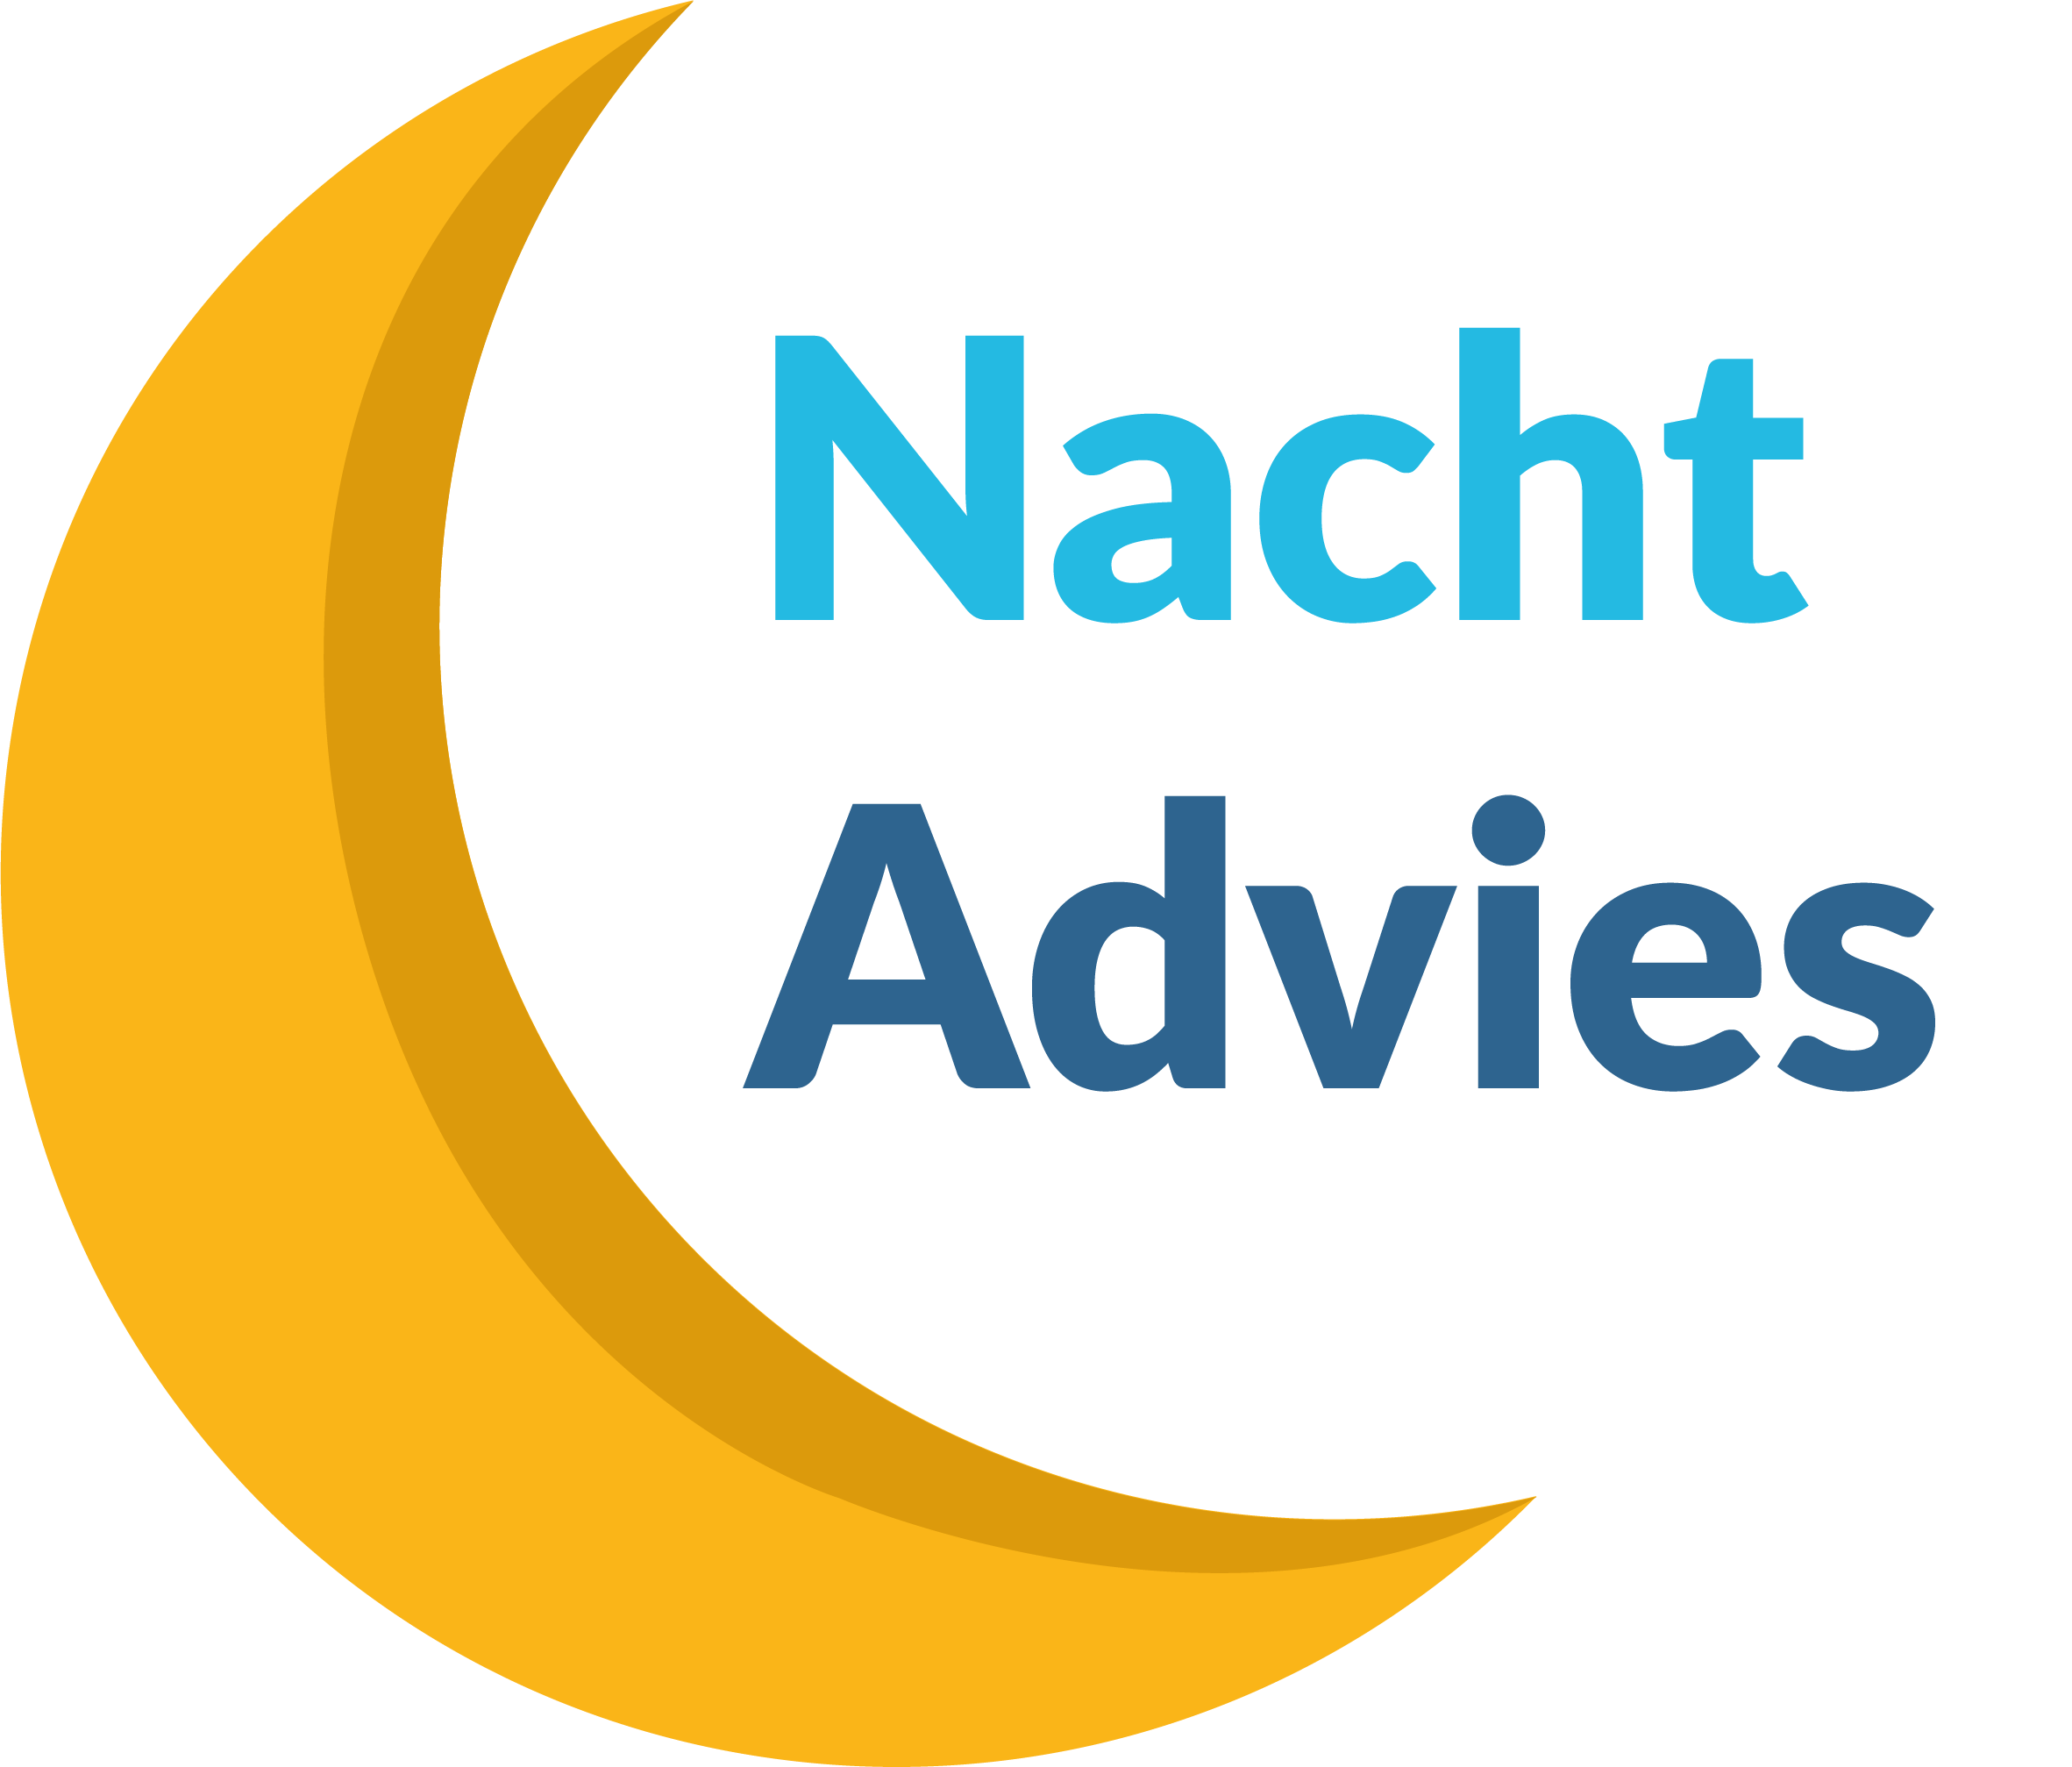 Nacht Advies Nederland